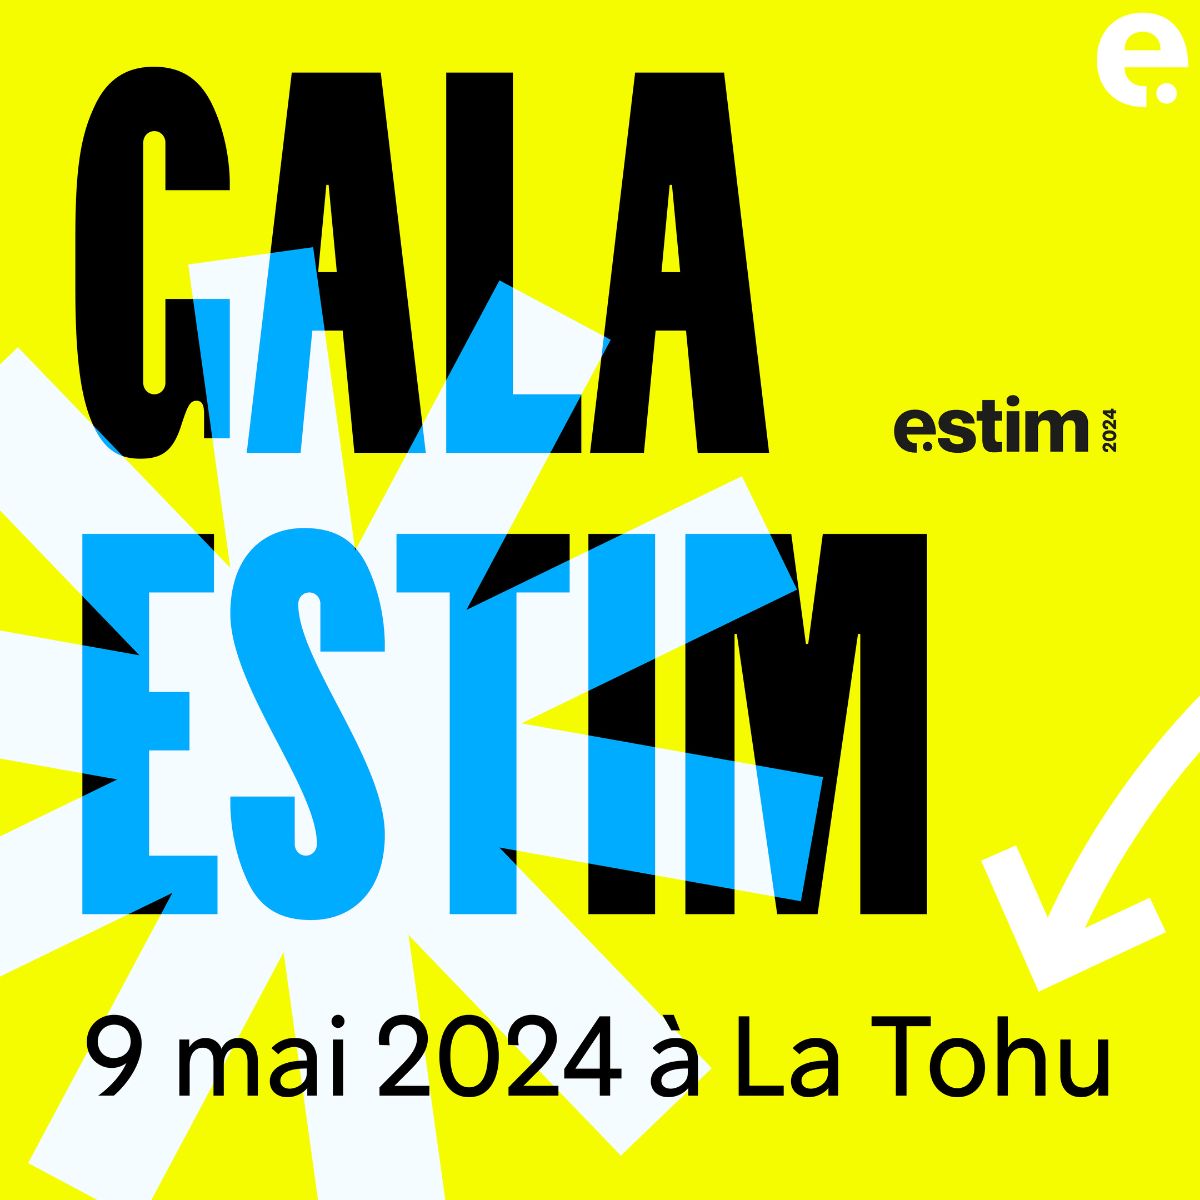 Nous sommes fier·ère·s de soutenir le concours #ESTim2024, organisé par la @CCEMontreal, en tant que partenaire PhotoBooth. Ne manquez pas le Gala pour une belle soirée de #réseautage et de découverte d’#entreprises inspirantes. Le 9 mai à la Tohu : buff.ly/49uvpBt